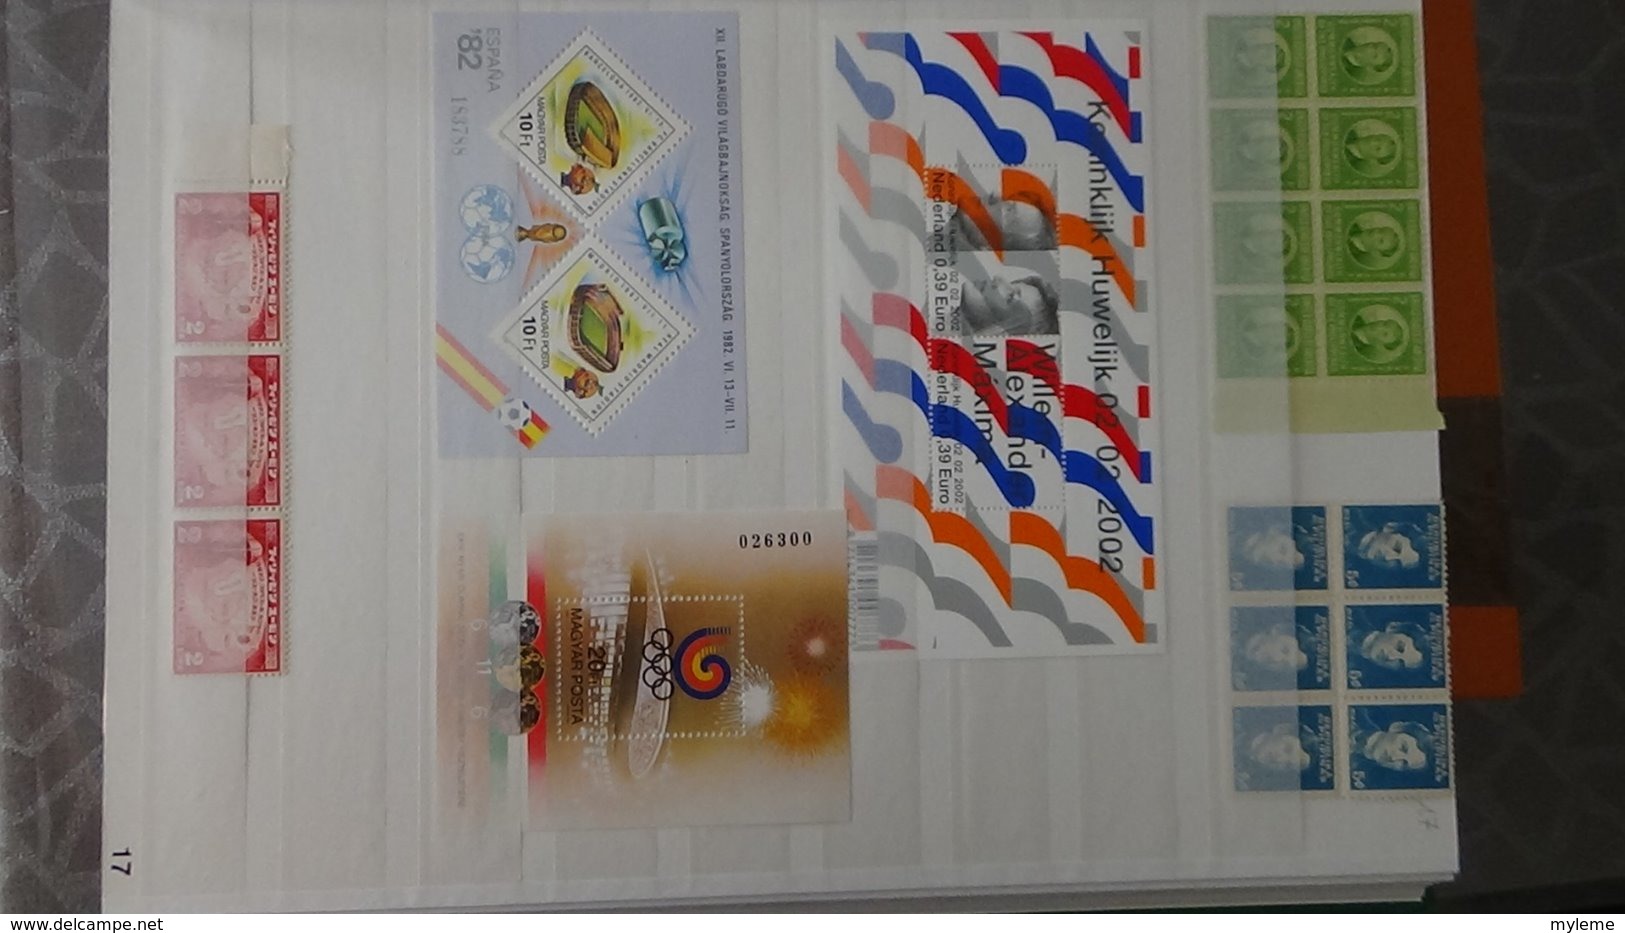 Plus de 140 blocs, bandes, carnets ** + timbres de différents pays. A saisir !!!